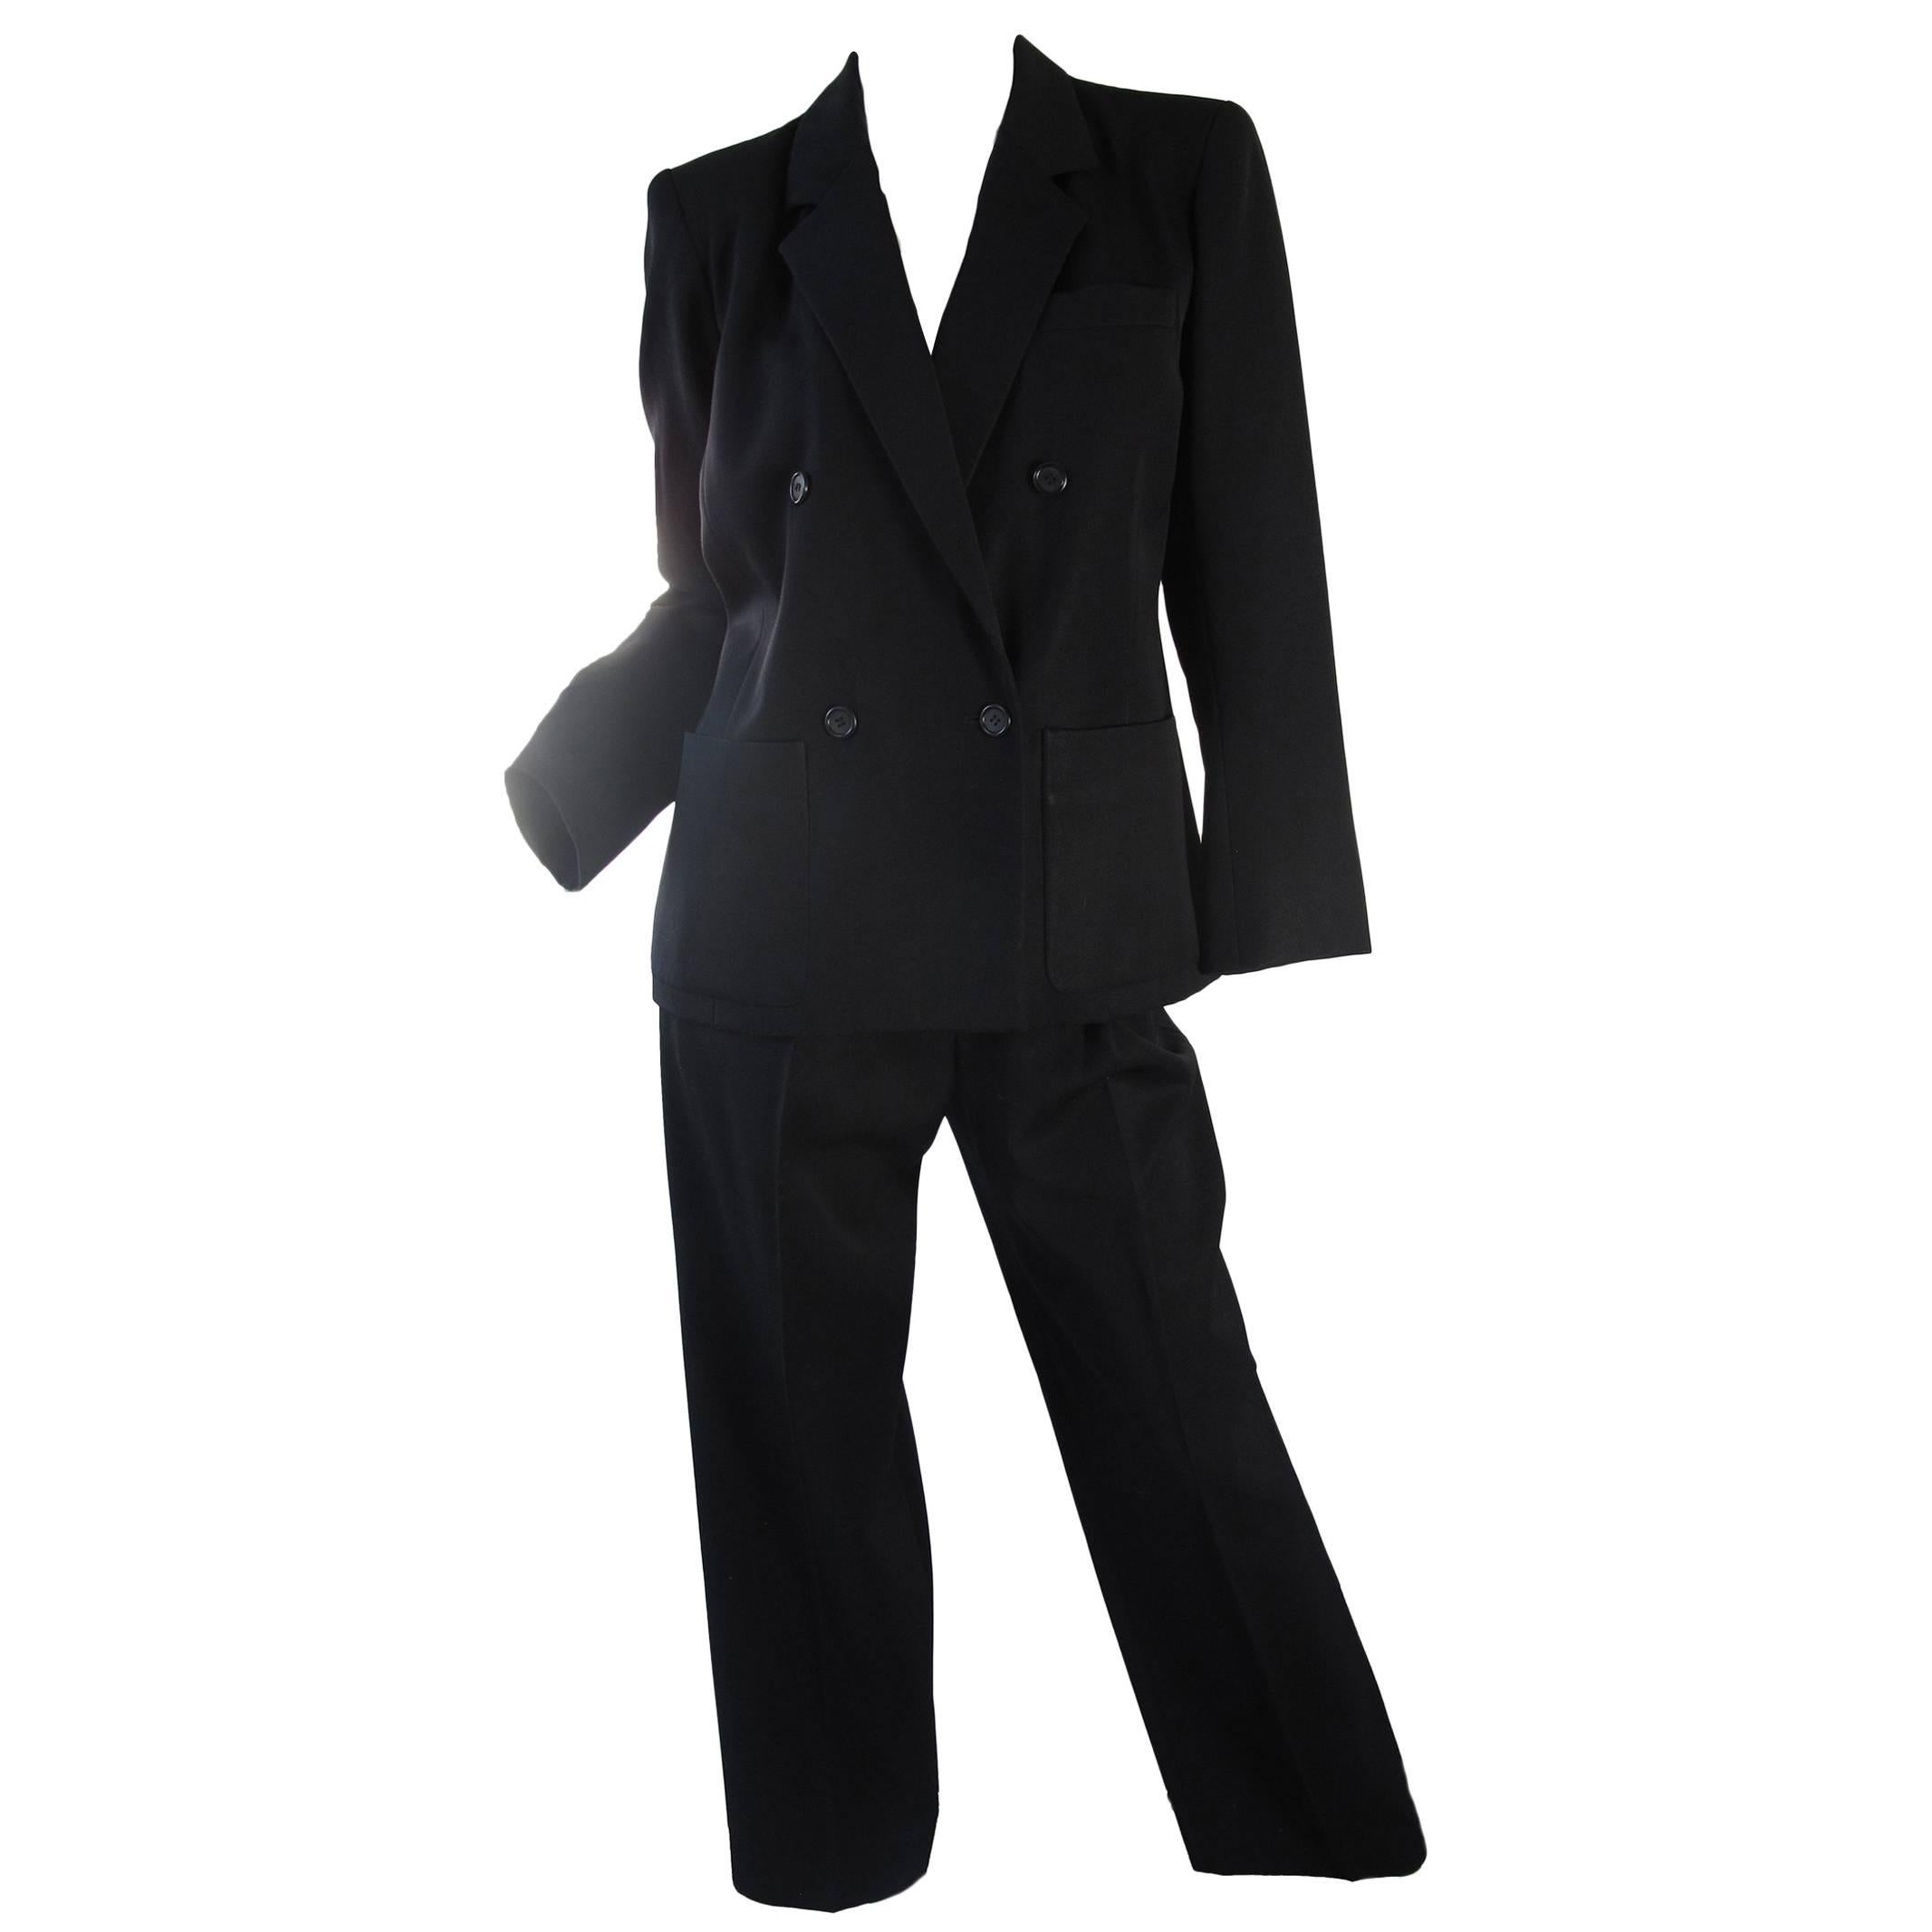 Yves Saint Laurent Rive Gauche Black Suit, 1980s